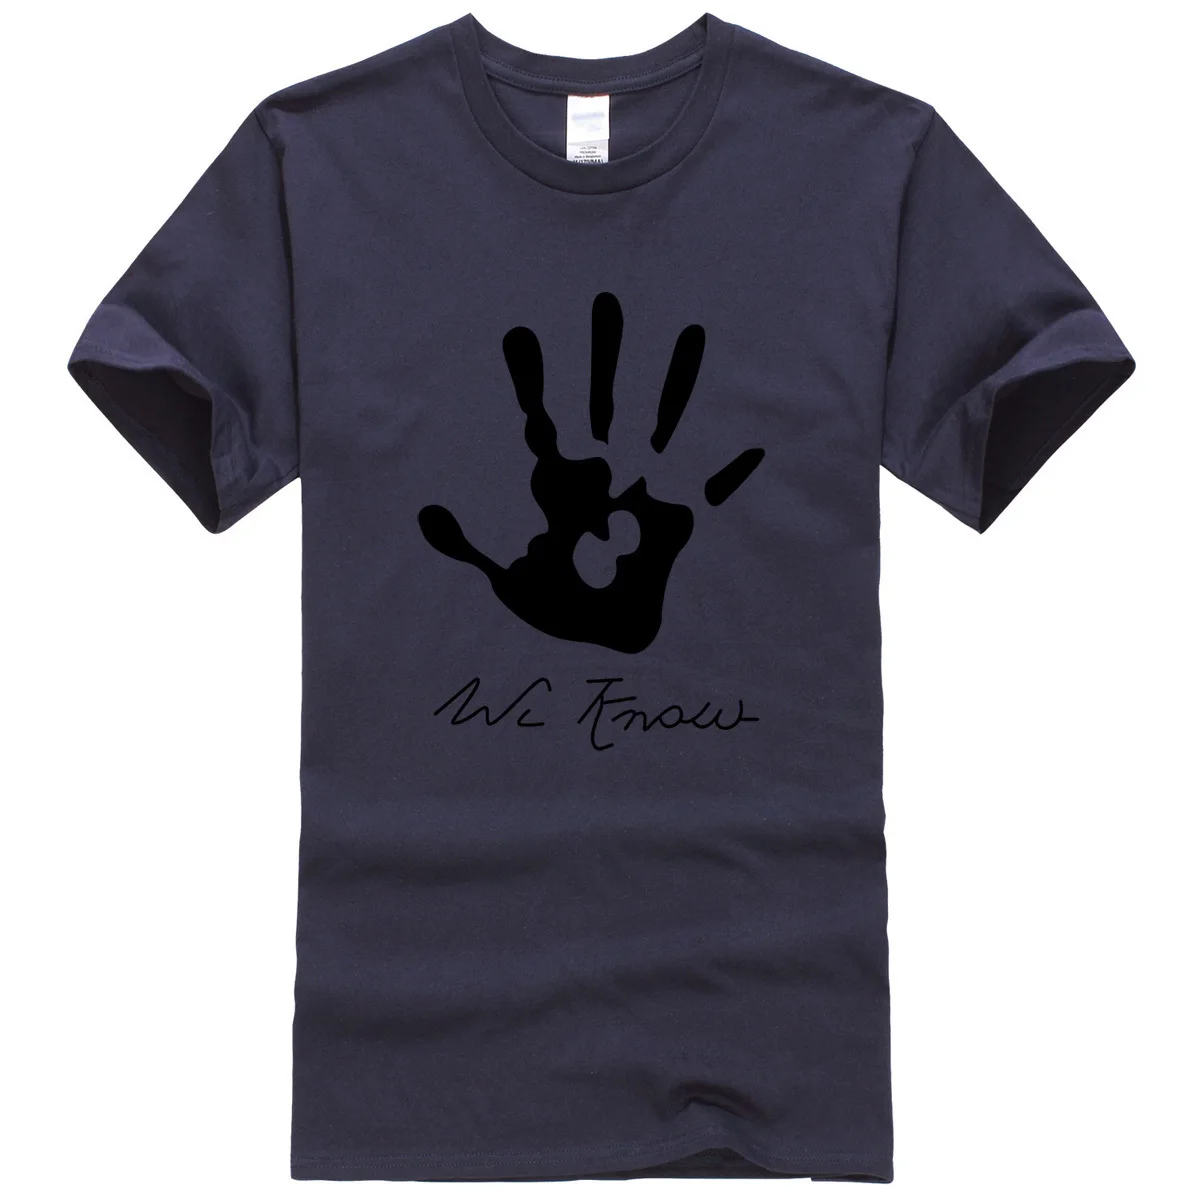 Стойкая Очаровательная Спортивная футболка Skyrim Dark brothy с рисунком руки мужские футболки с круглым вырезом крутая футболка мужские топы футболки бренд - Цвет: dark blue2